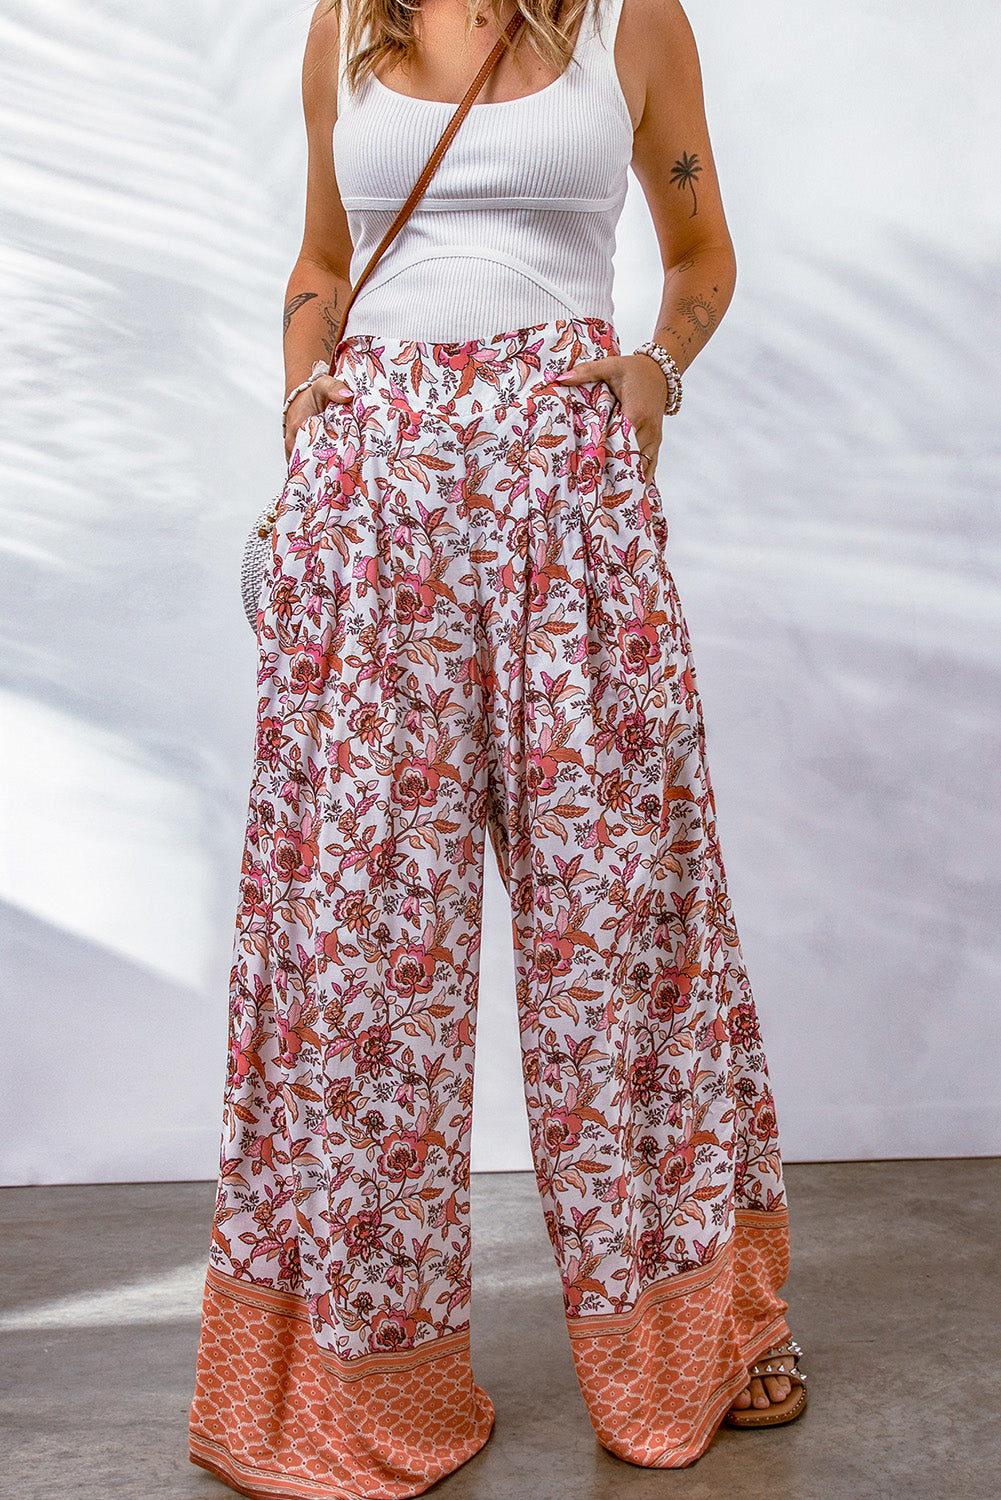 Pantaloni larghi a vita alta arricciati con stampa floreale rosso fuoco